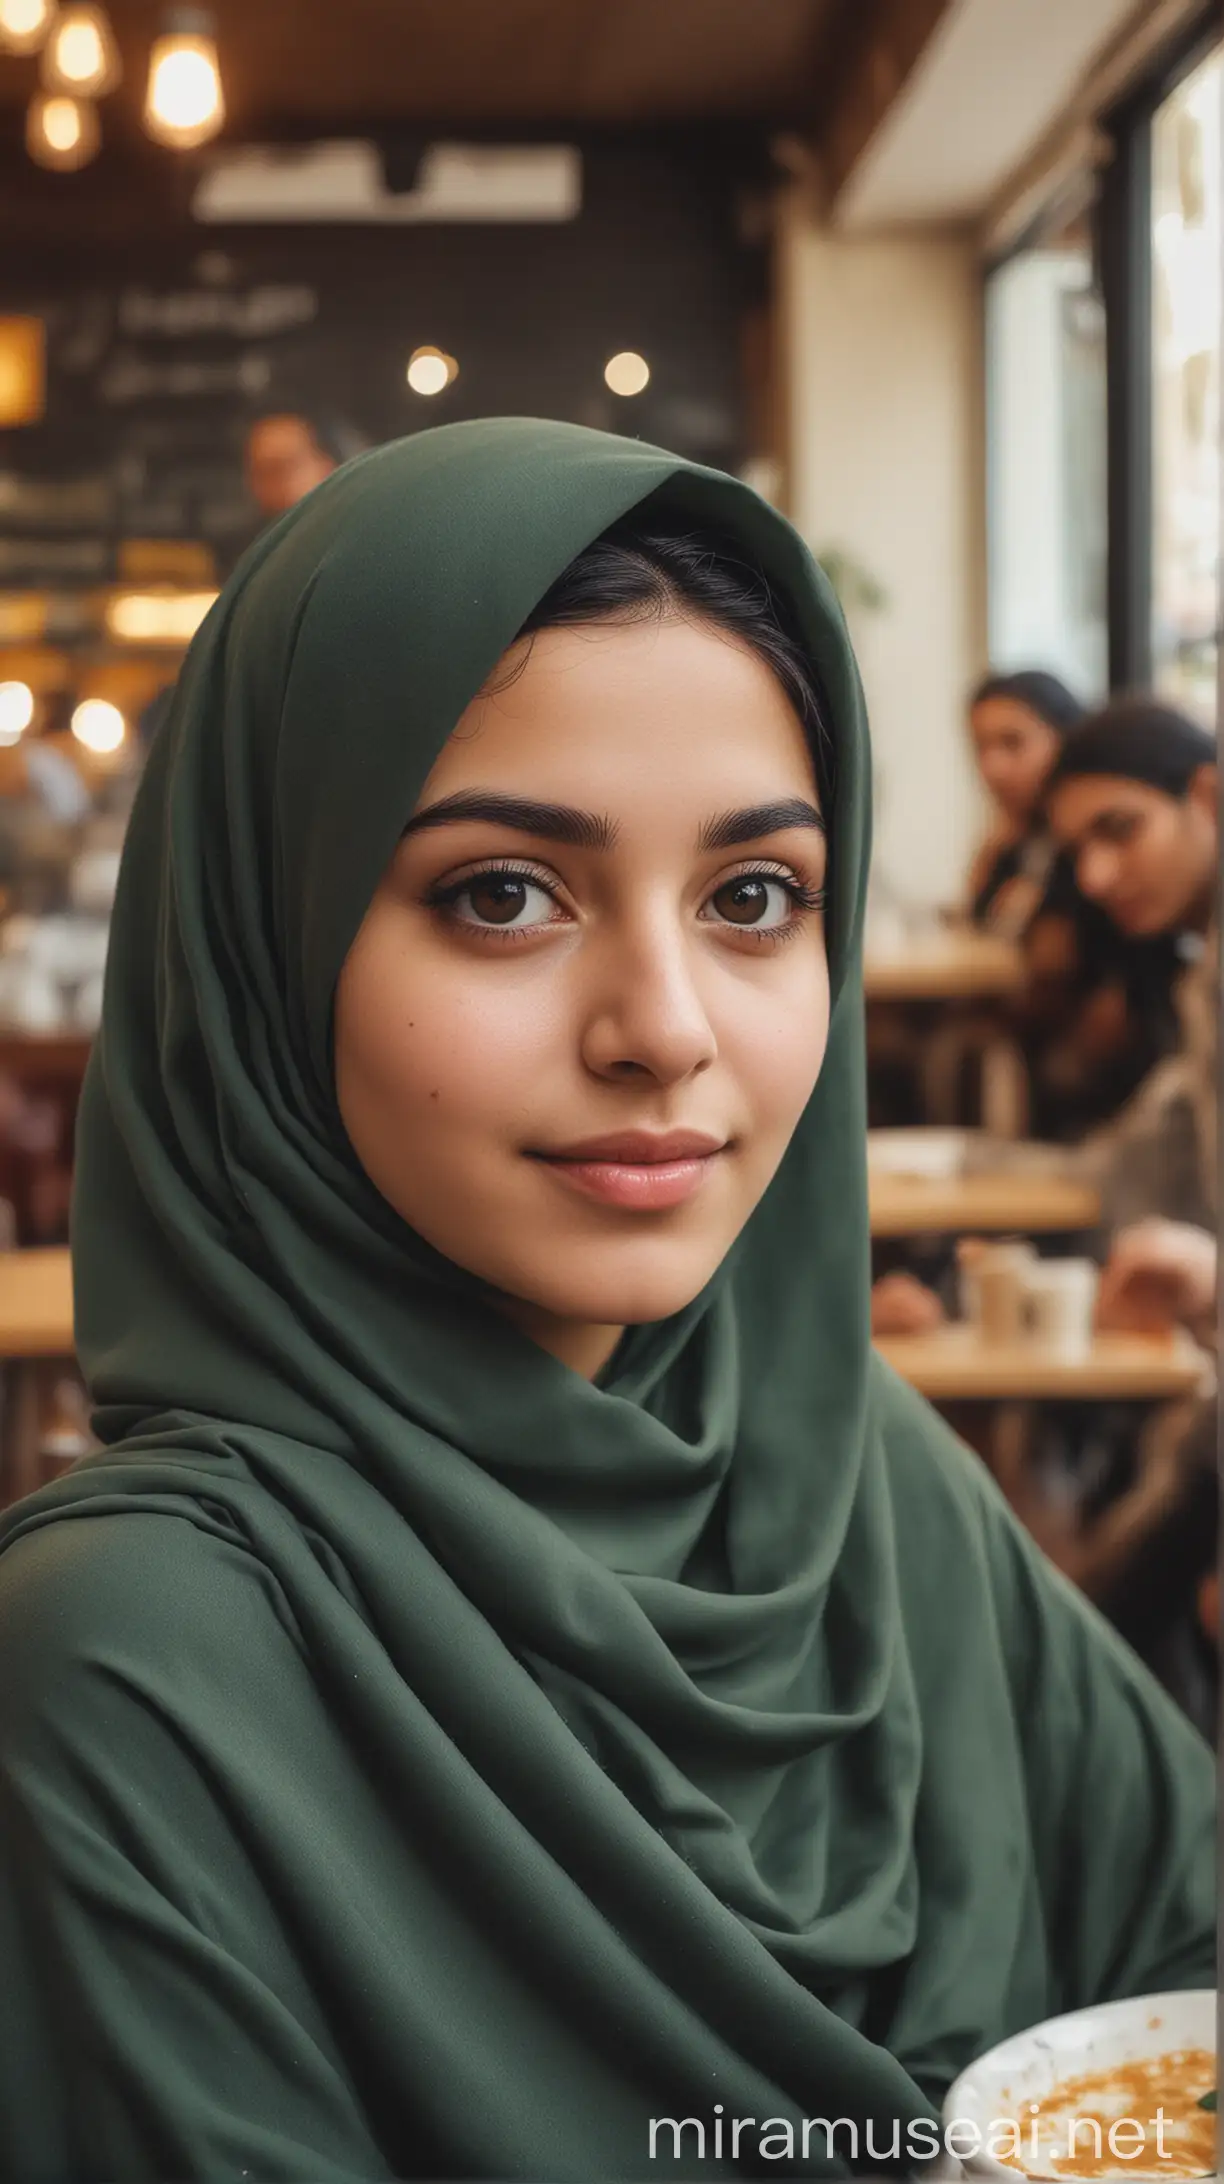 دختر با حجاب ایرانی در کافه